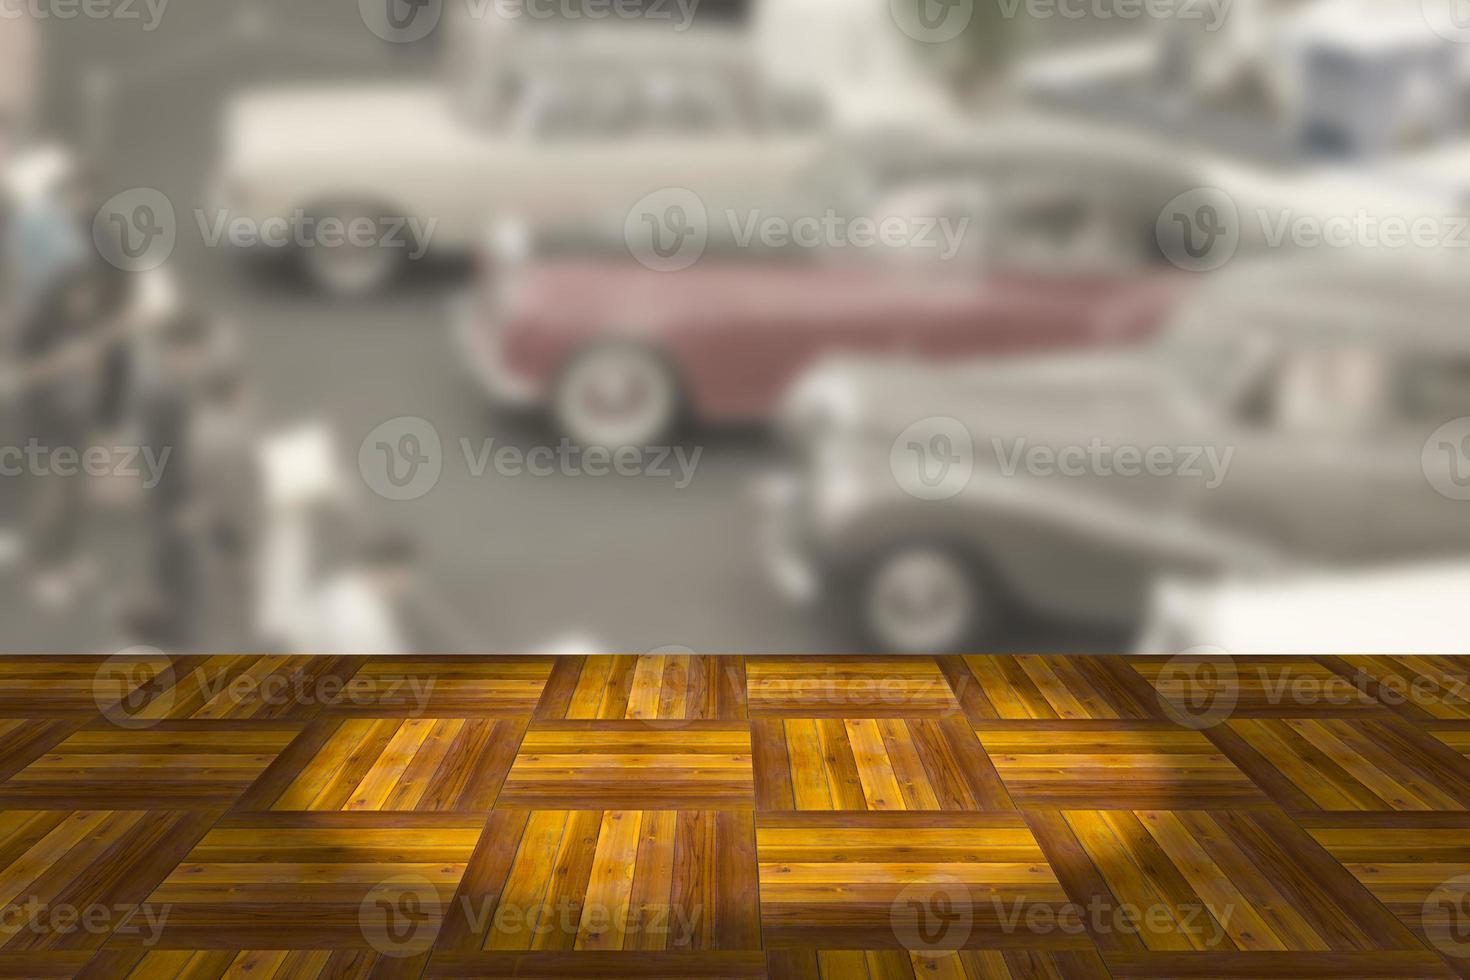 plataforma espacial de tablero de madera vacía con fondo borroso de la sala de exhibición de autos antiguos foto